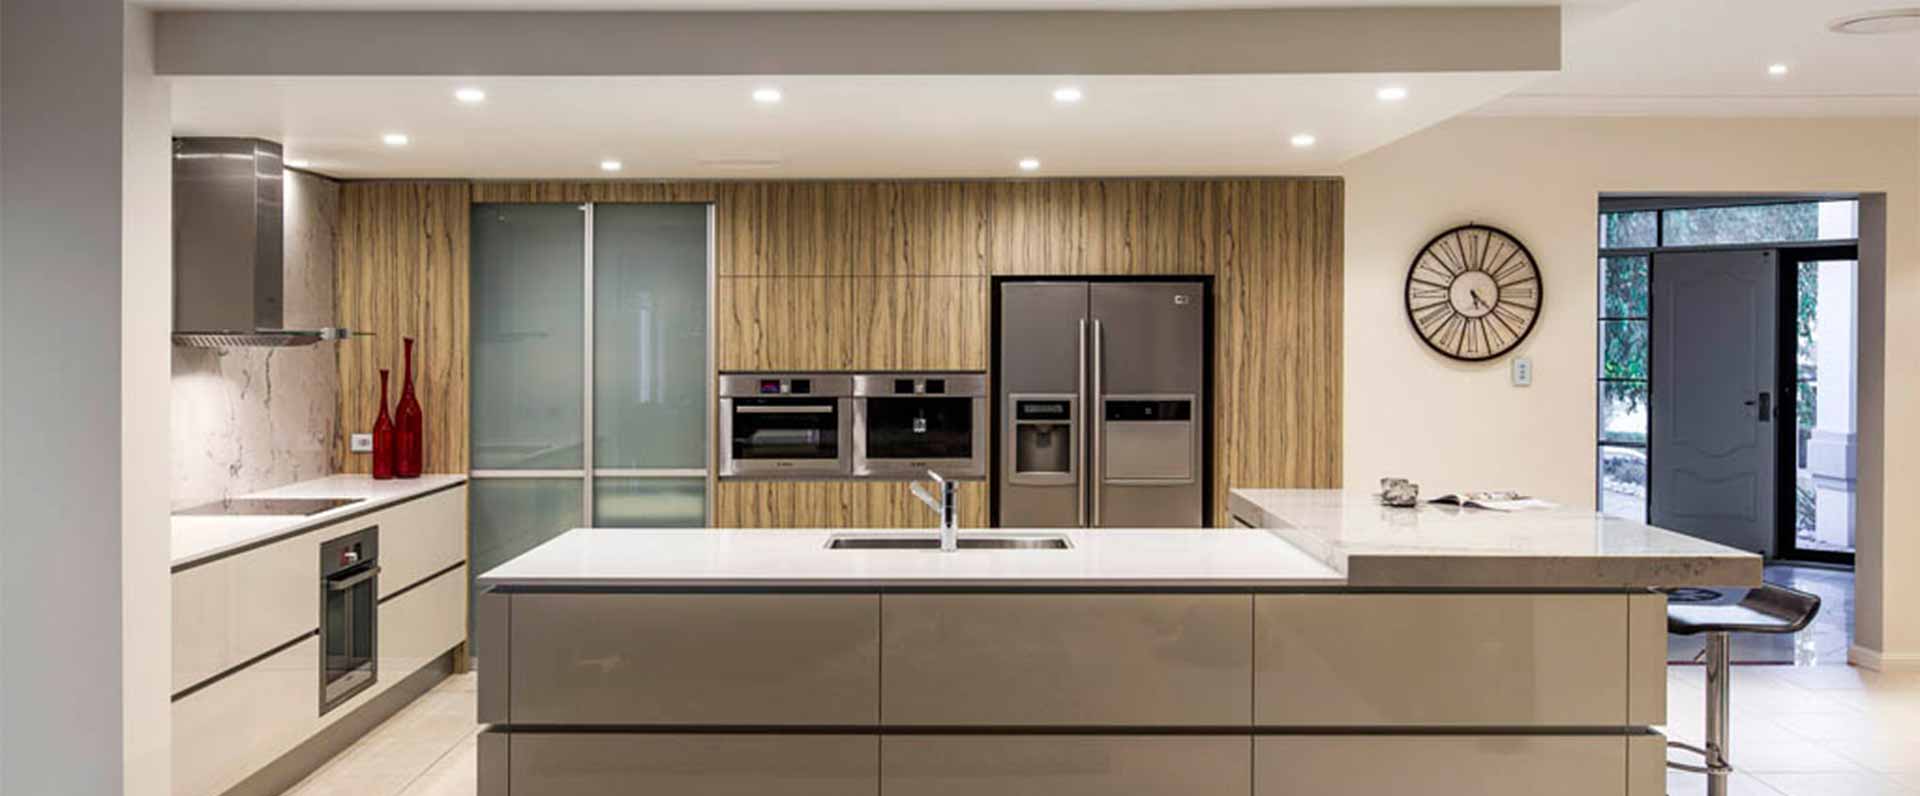 kitchen design and build sydney